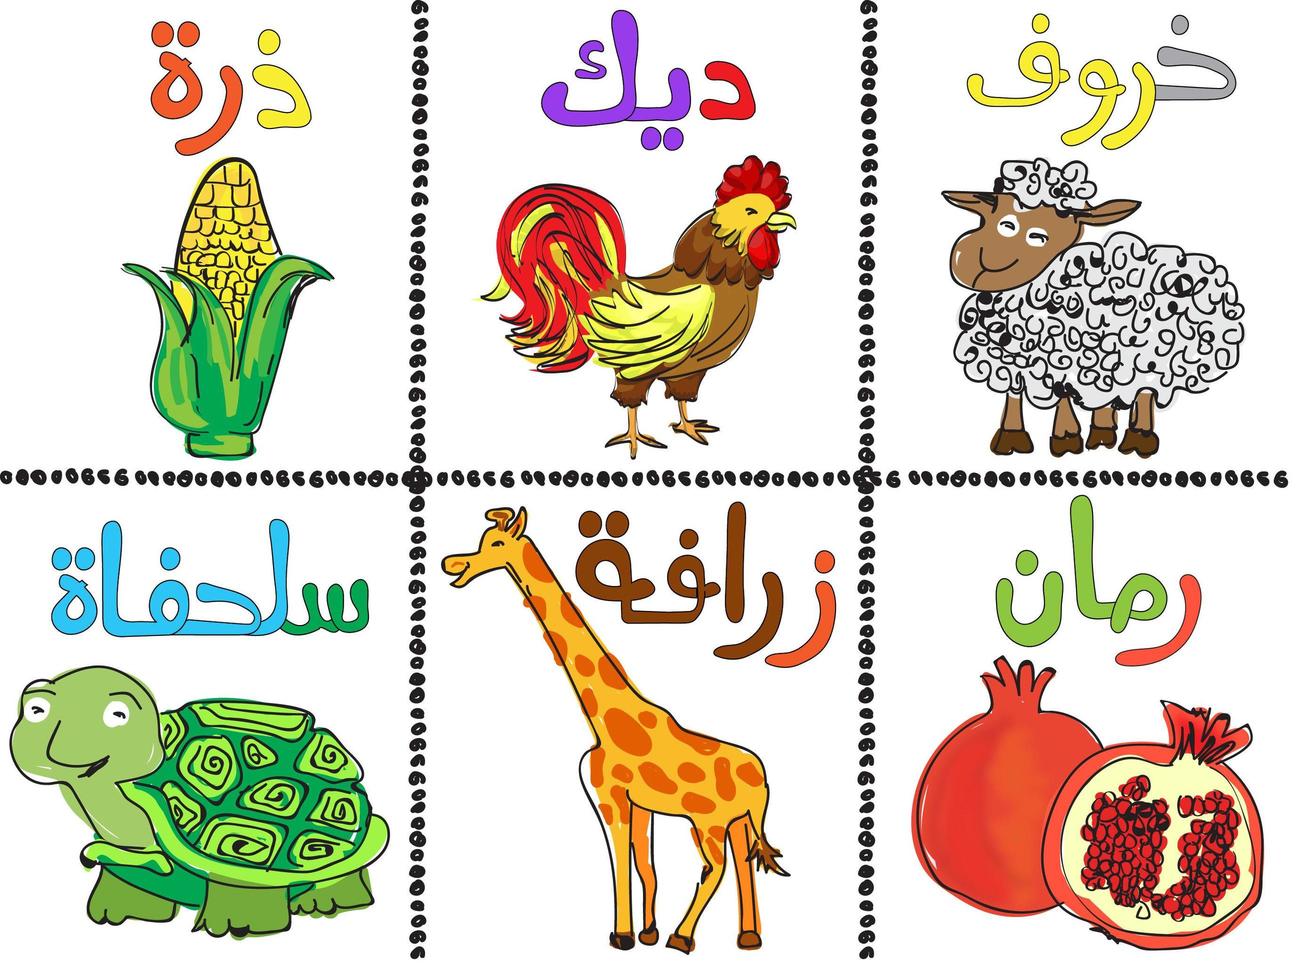 Gekritzelart arabisches Alphabet und Tier gesetzt vektor